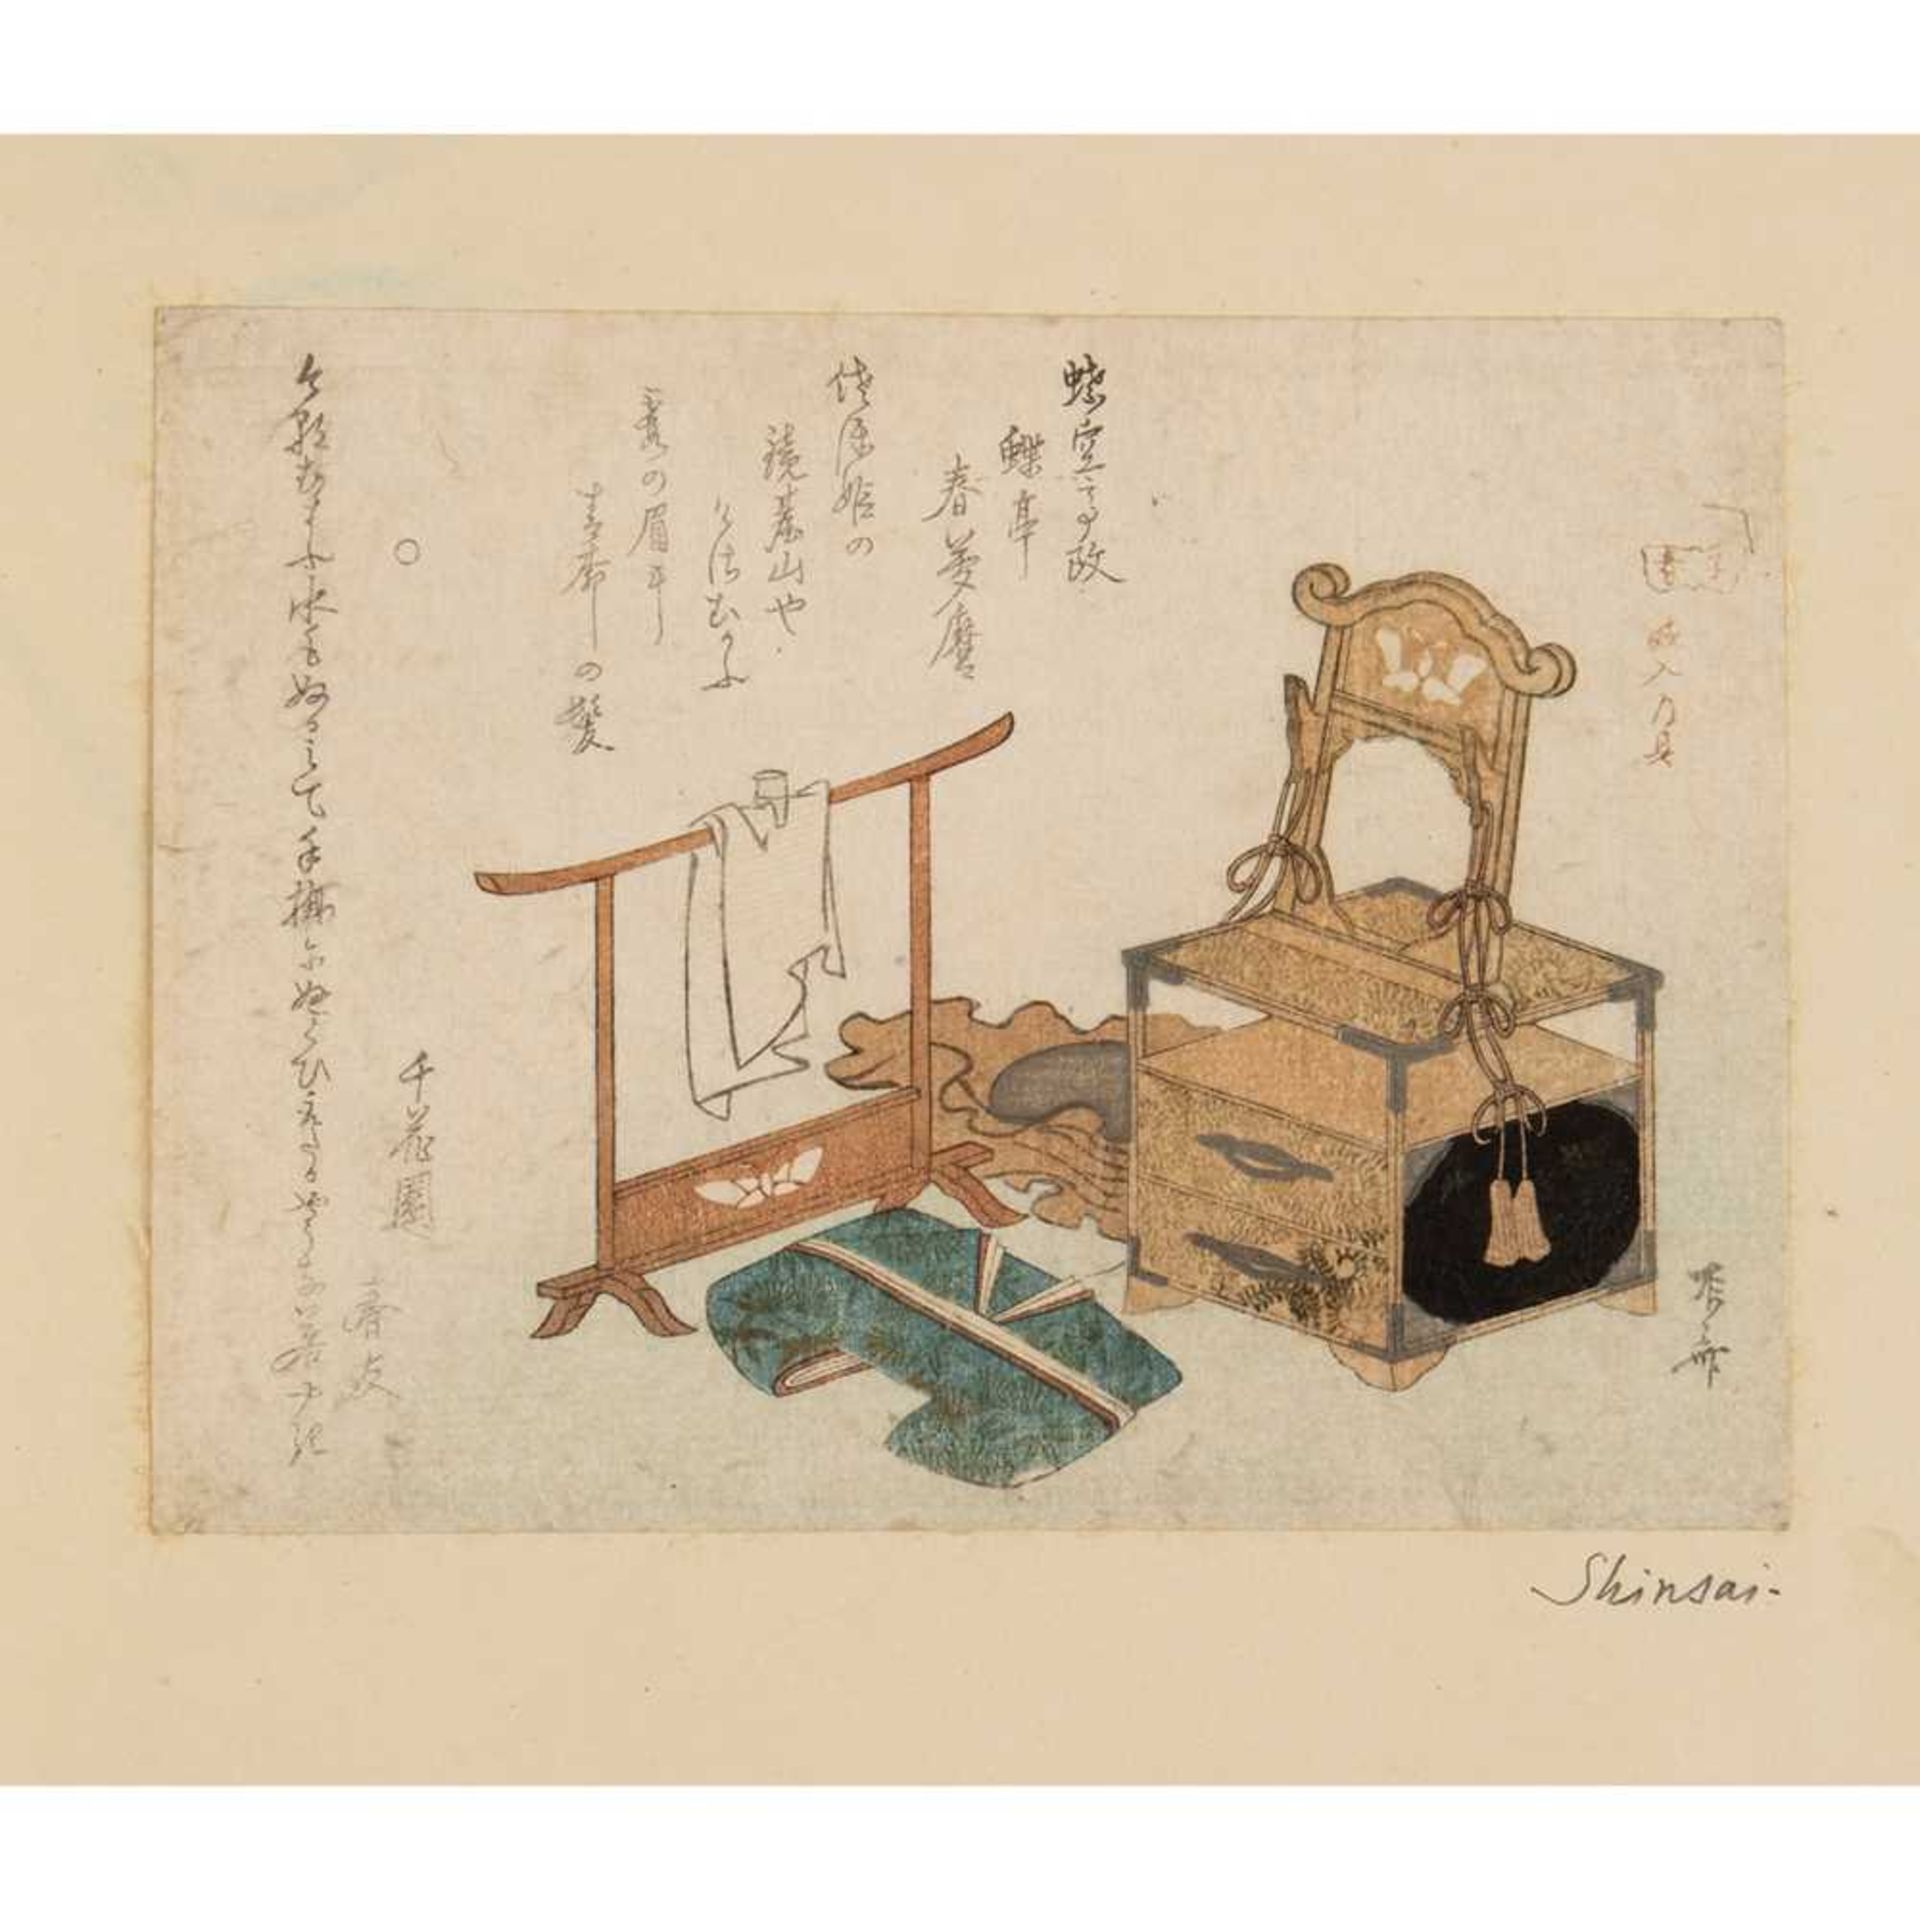 RYURYUKYO SHINSAI (active 1799-1823) EDO PERIOD